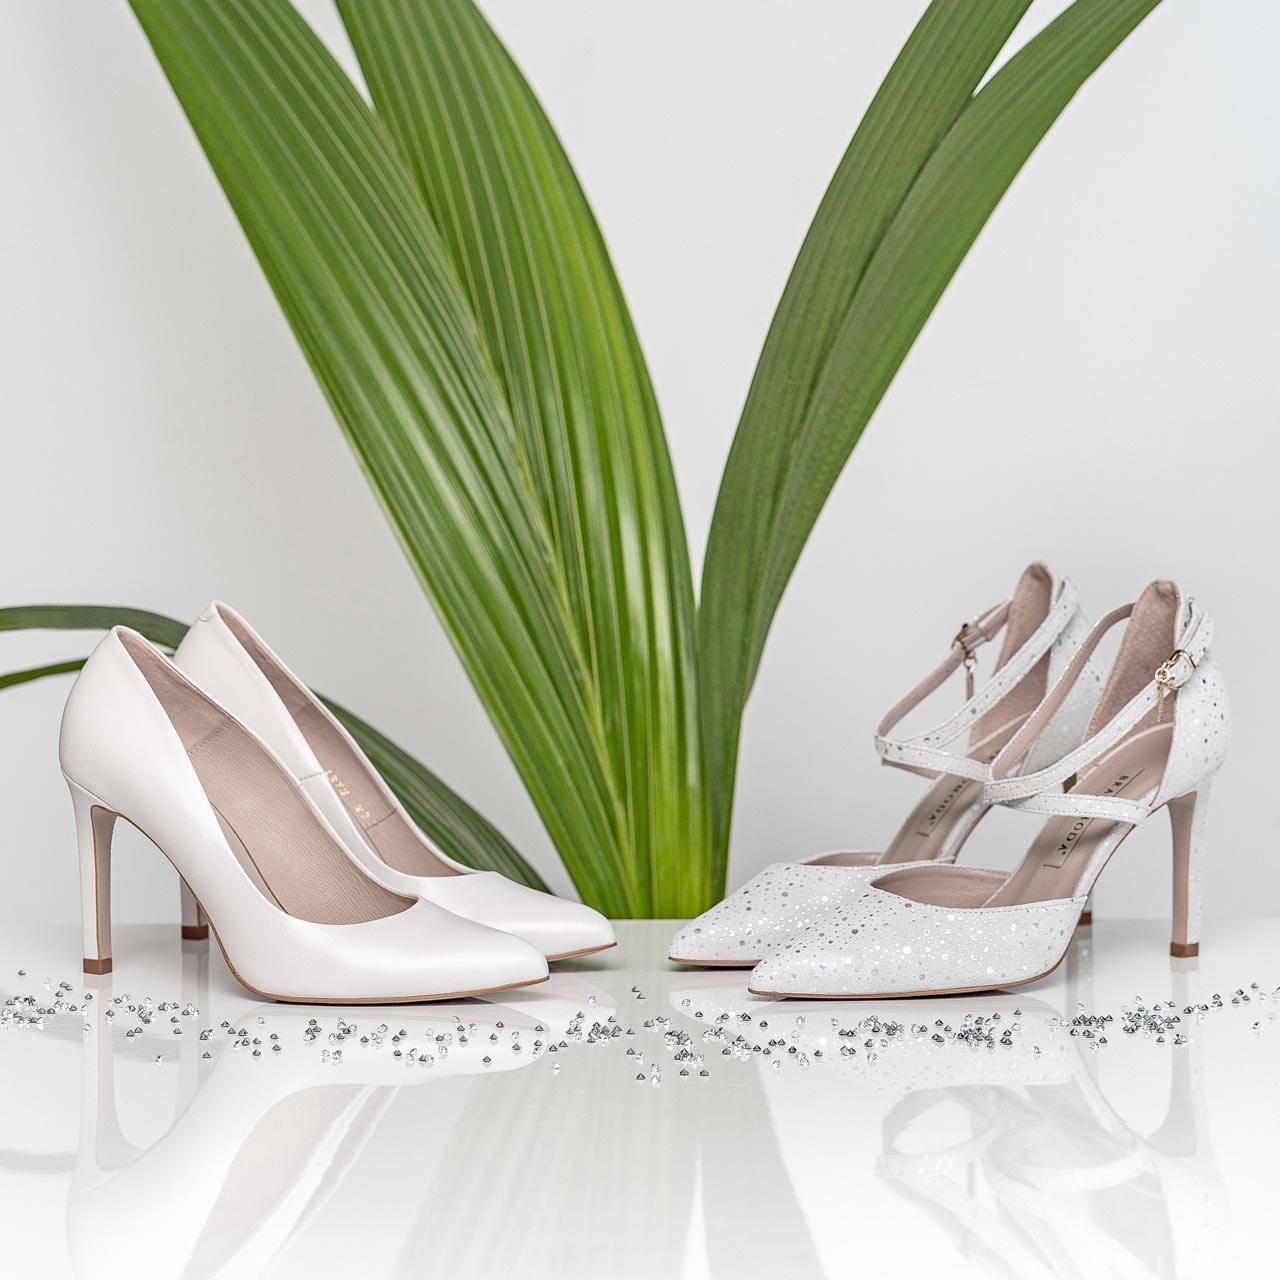 Damskie buty ślubne BRAVOMODA, białe i beżowe szpilki i czółenka na ślub i wesele